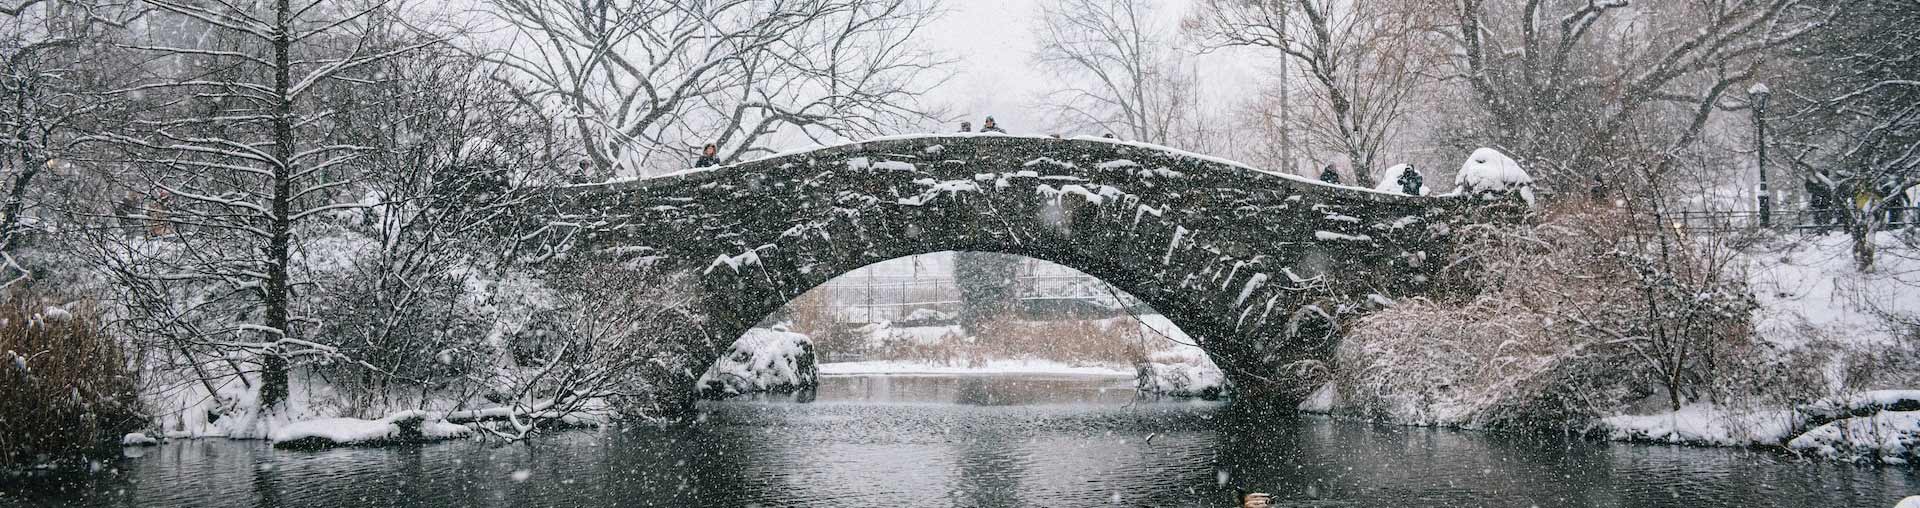 石橋を背景に雪が降るニューヨークのセントラルパーク